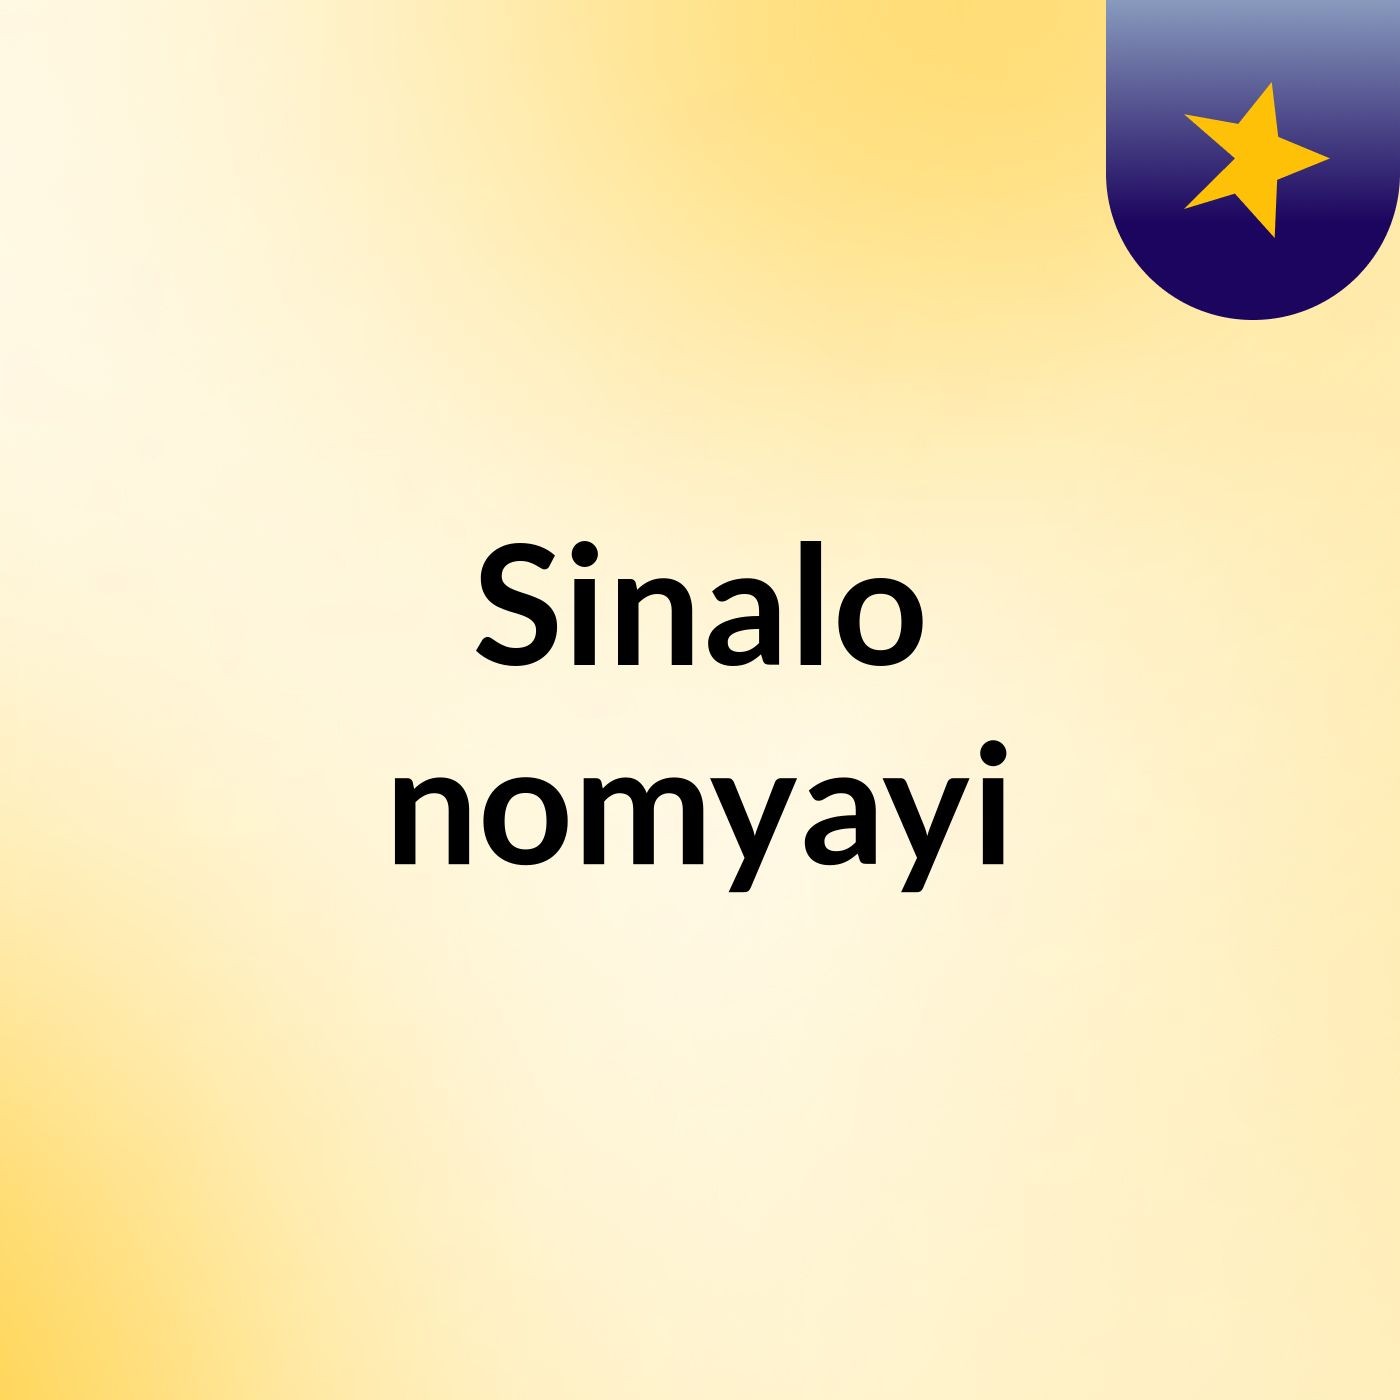 Sinalo nomyayi